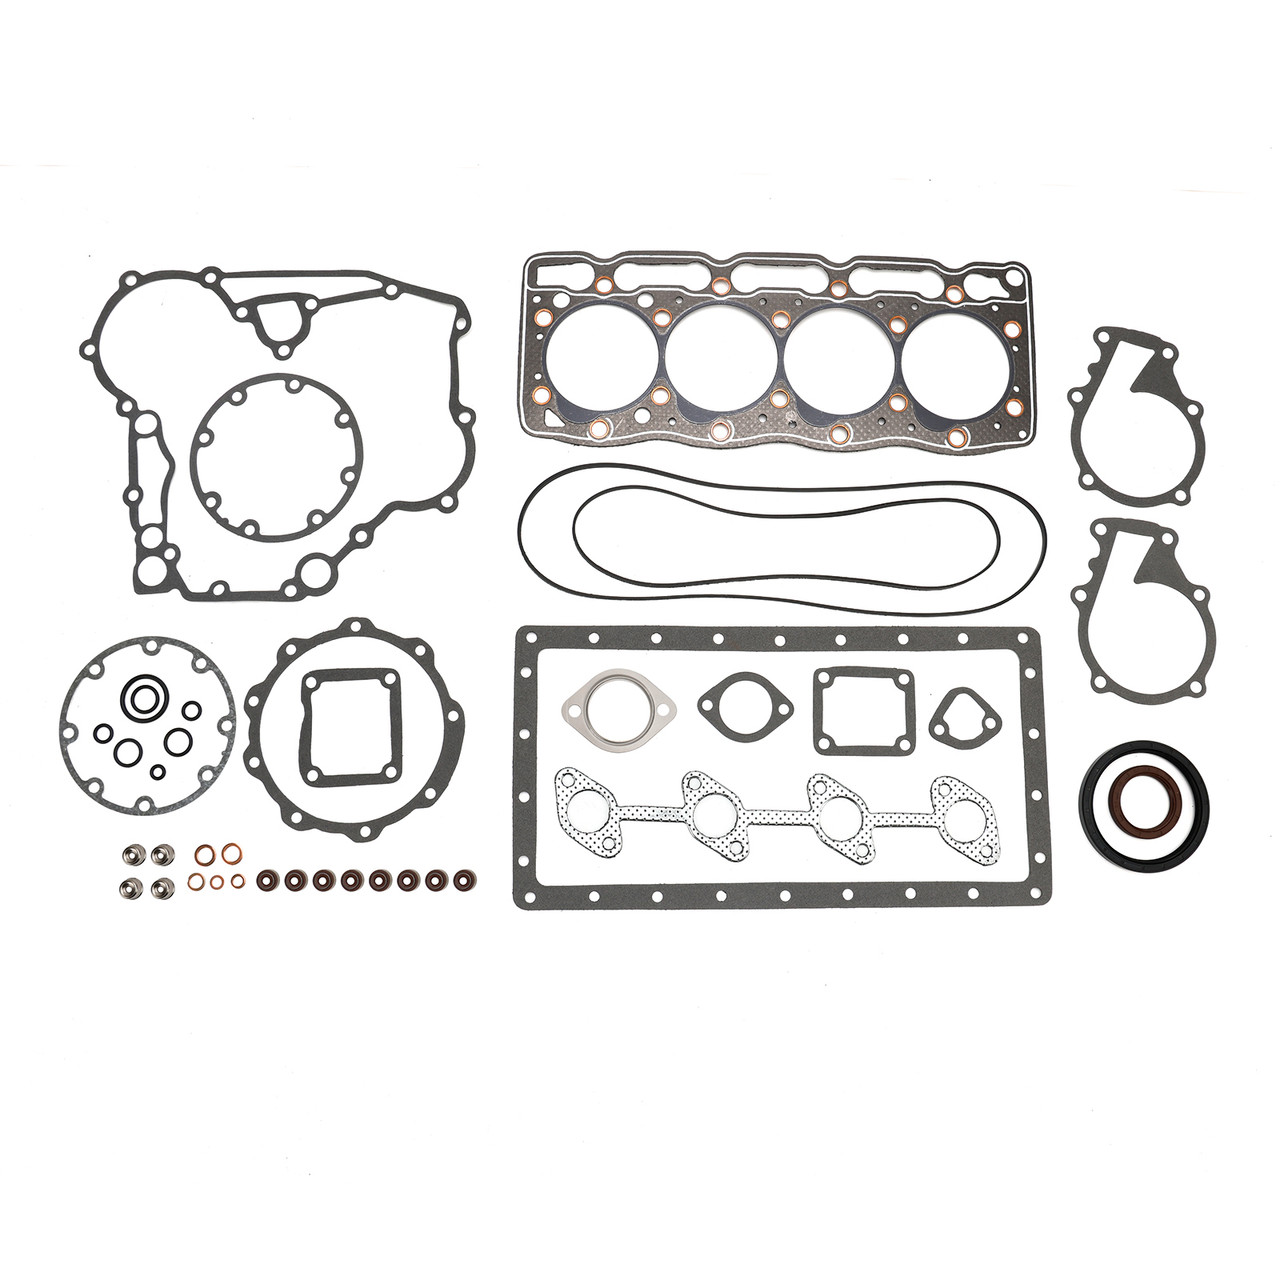 Complete Cylinder Head Assy+Gasket Kit For Kubota V1505 V1505D 1G091-03044